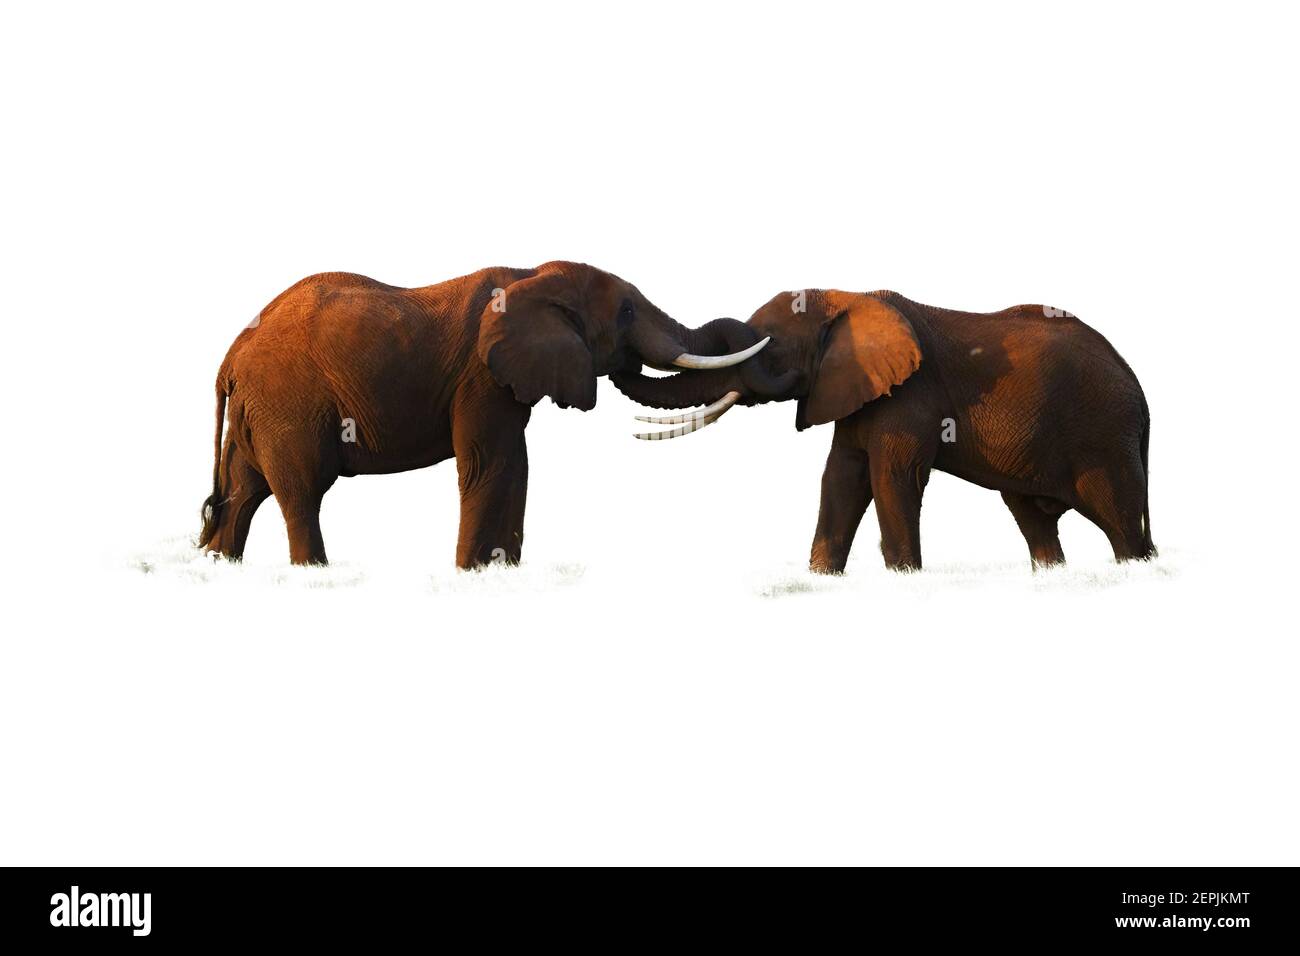 Isolato su sfondo bianco fotografia di due elefanti africani, Loxodonta africana, che si affacciano l'uno sull'altro, toccandosi con tronchi. Foto Stock